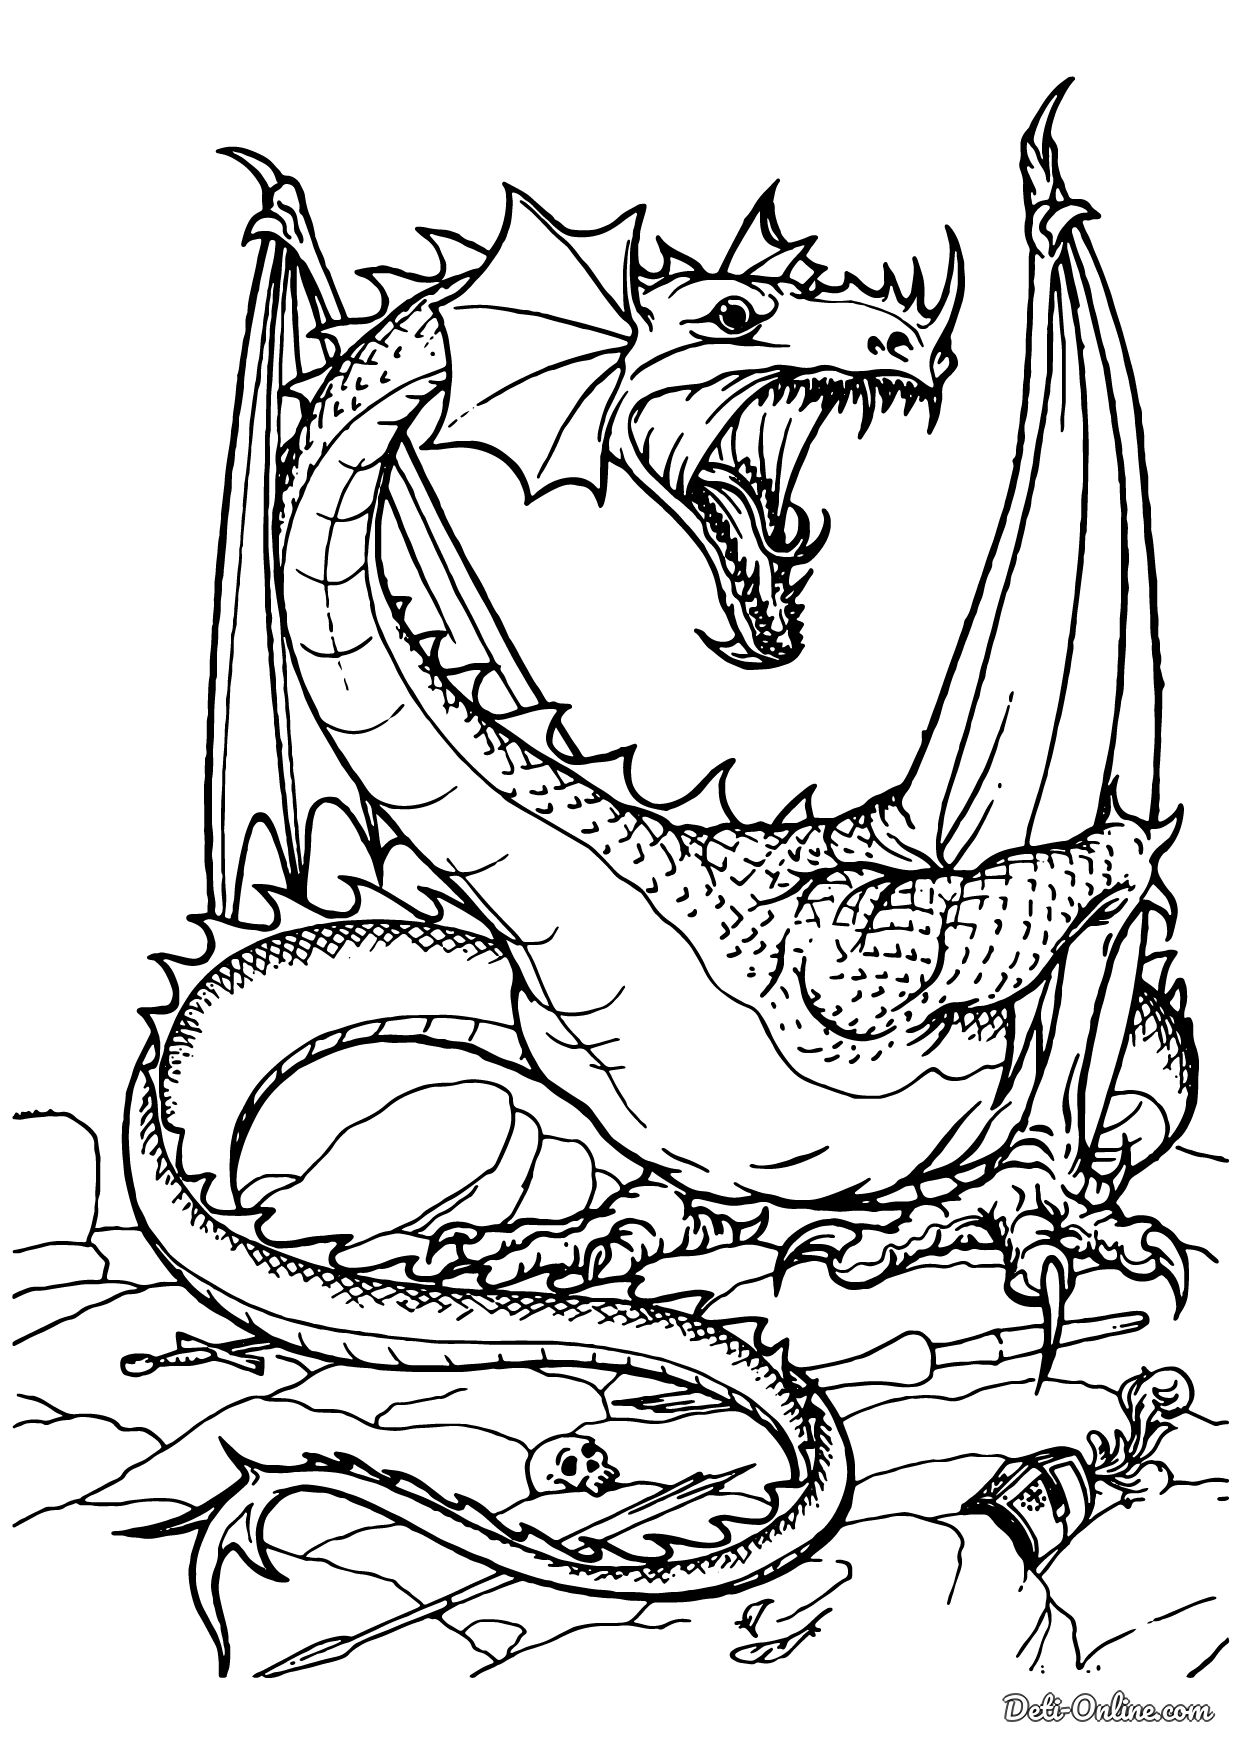 Распечатать раскраски для мальчиков Как приручить дракона.